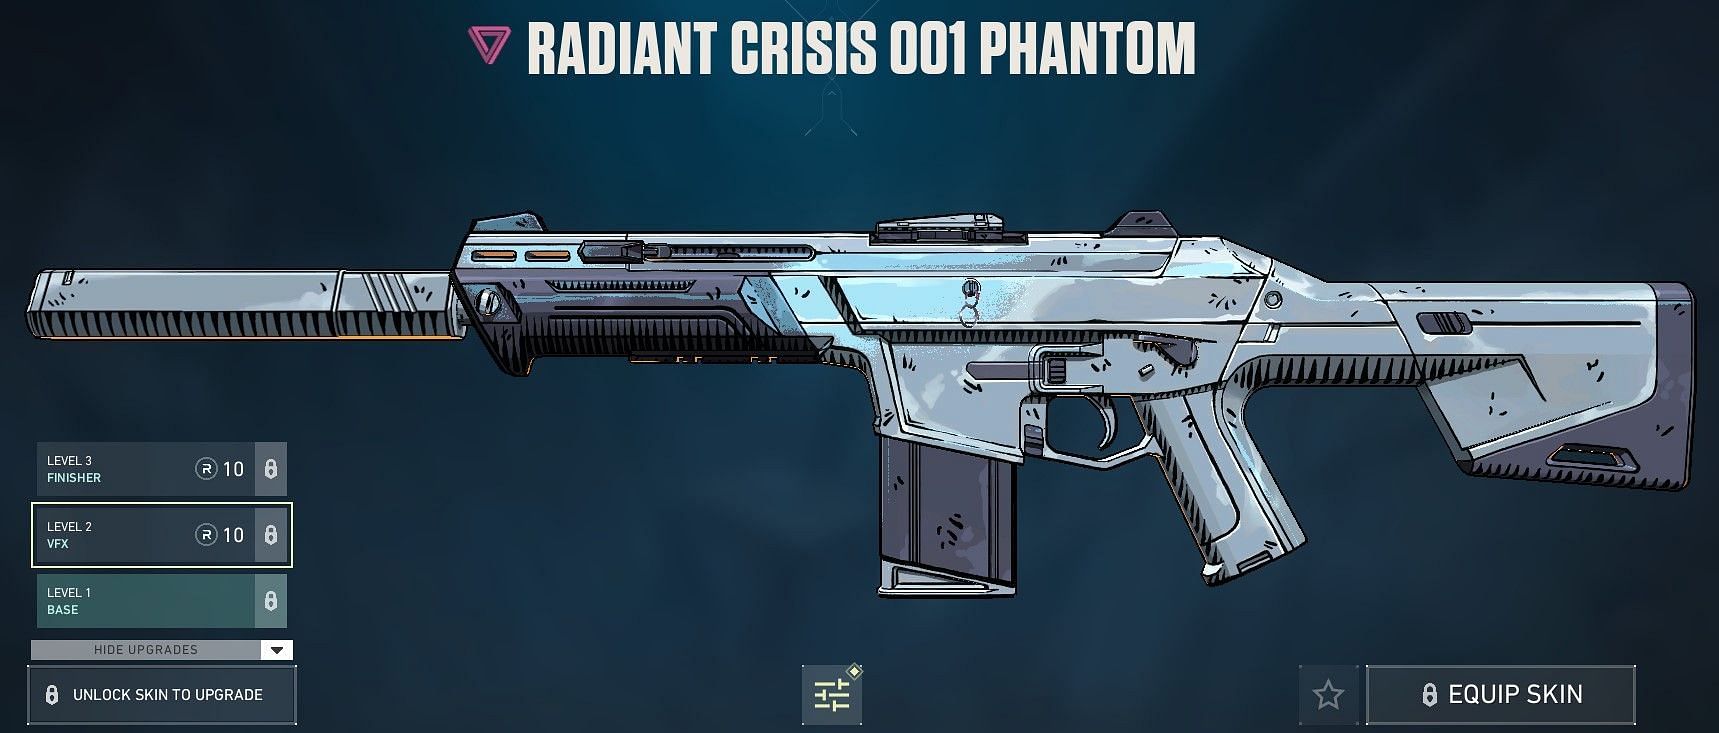 Radiant Crisis 001 Phantom (Image via Riot Games)